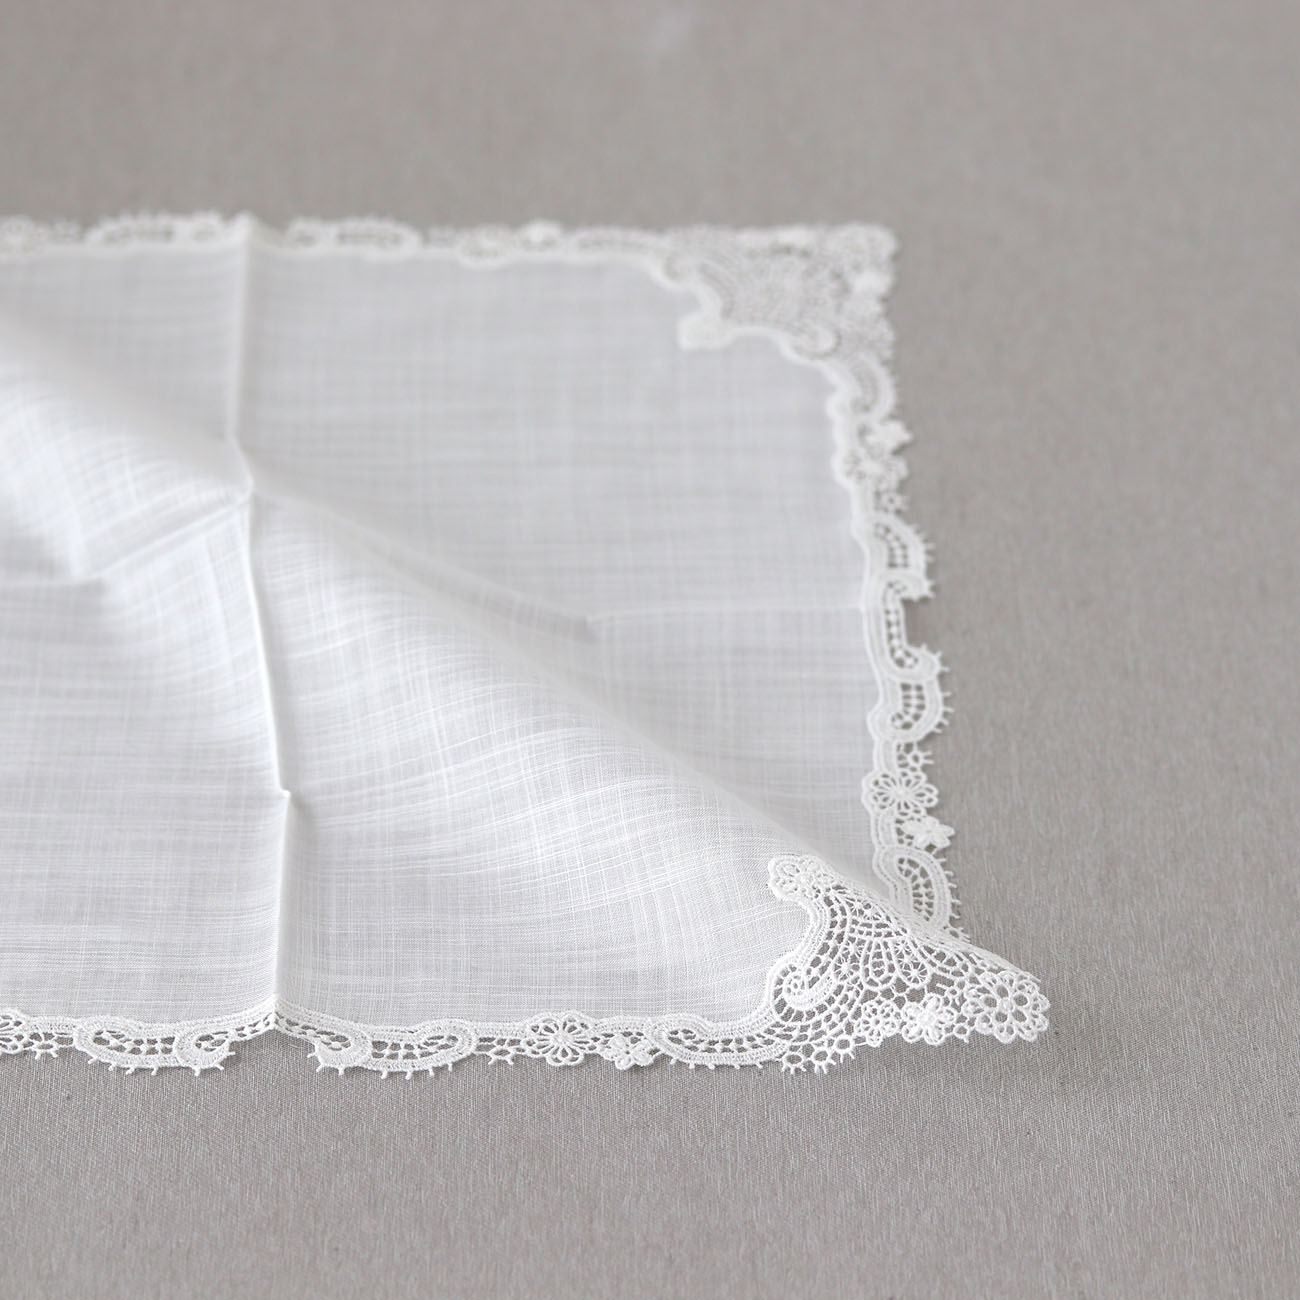 Riches [Bridal handkerchief